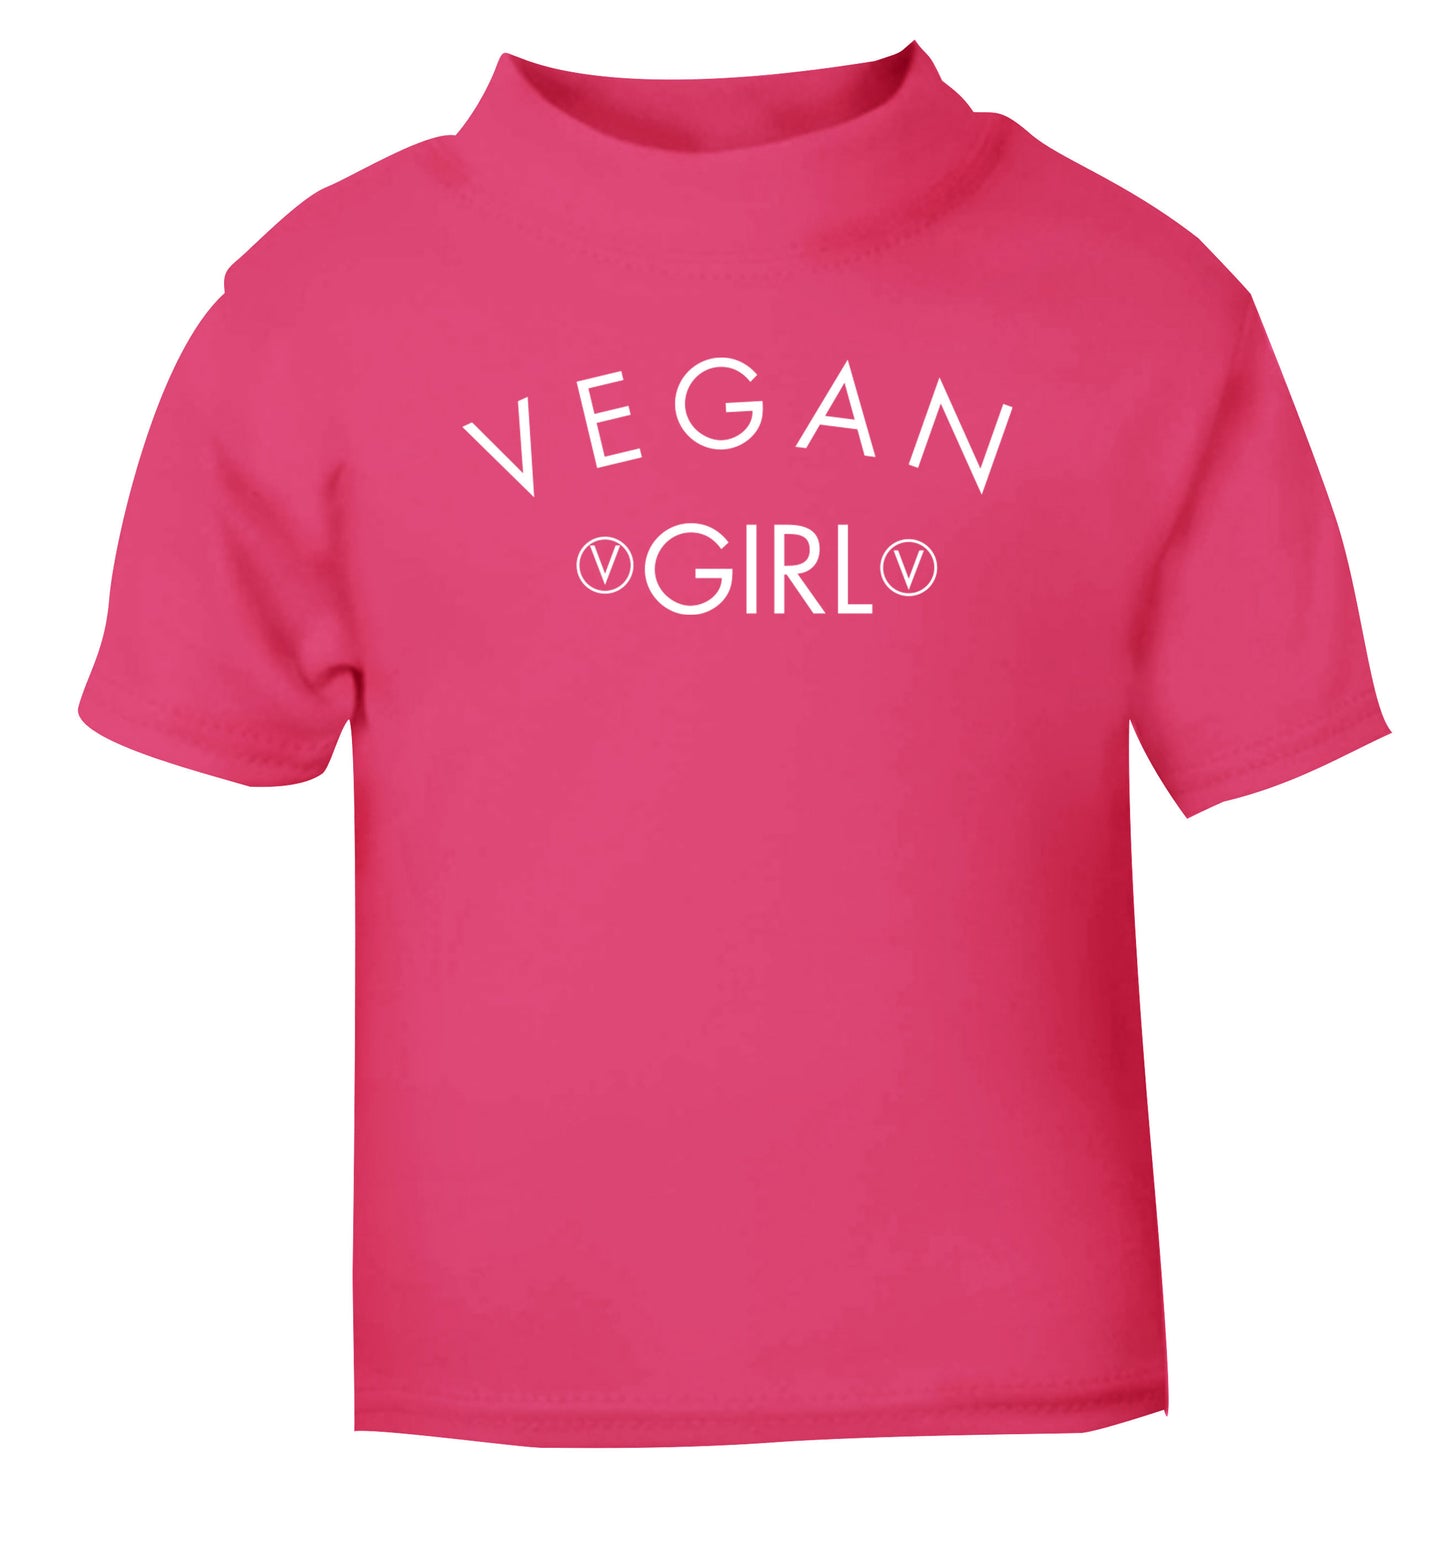 Vegan girl pink Baby Toddler Tshirt 2 Years